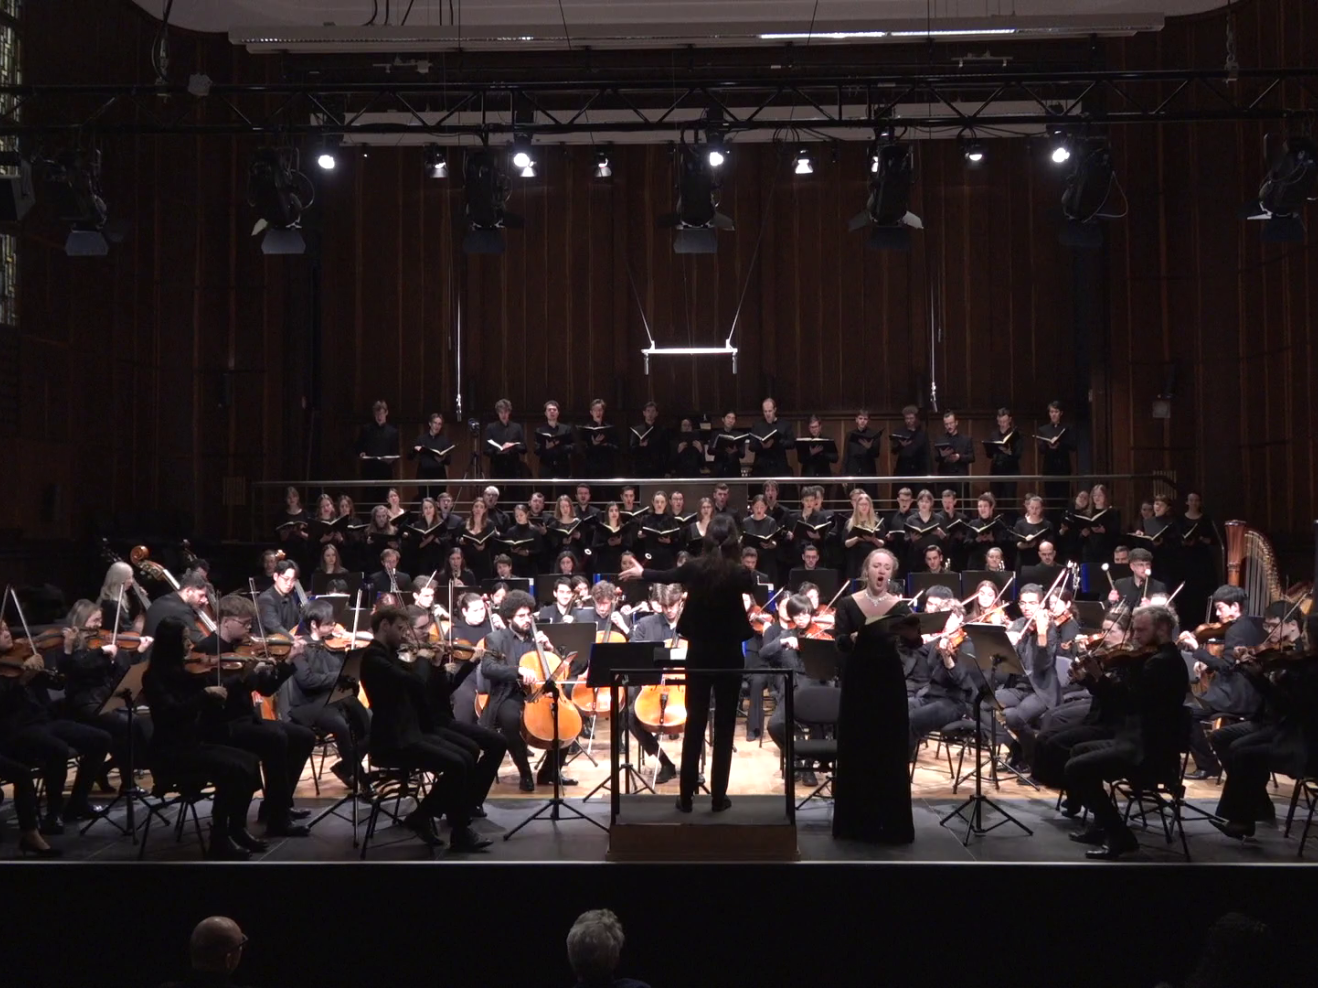 Frontalansicht auf Bühne mit Chor, Orchester, Sopranistin und Dirigentin